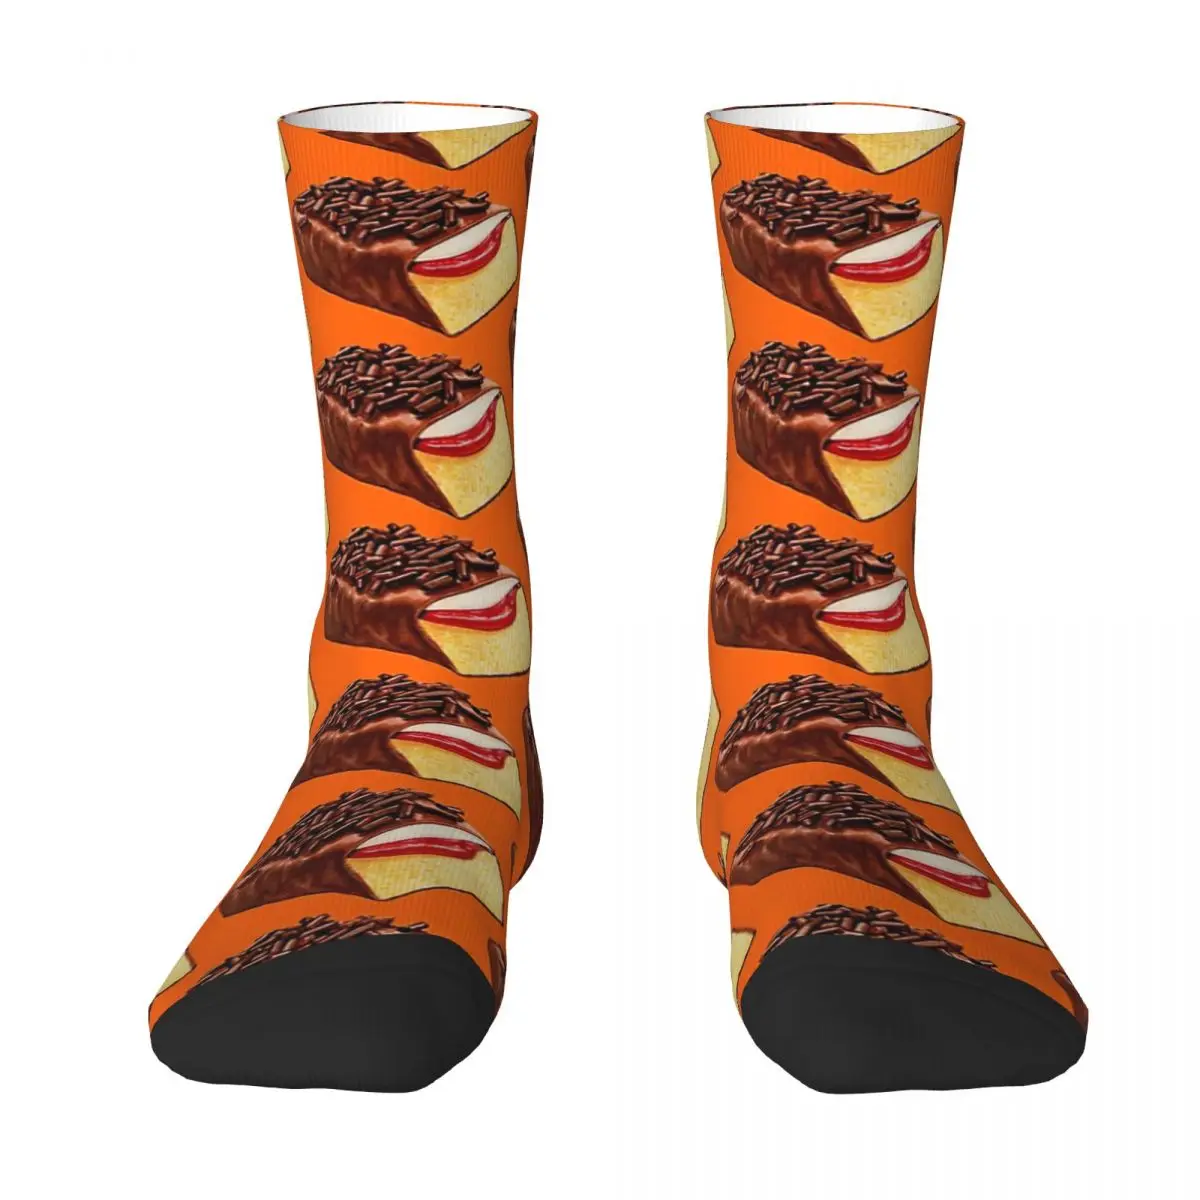 Gansimо оранжевые носки для взрослых, носки унисекс, мужские носки женские носки